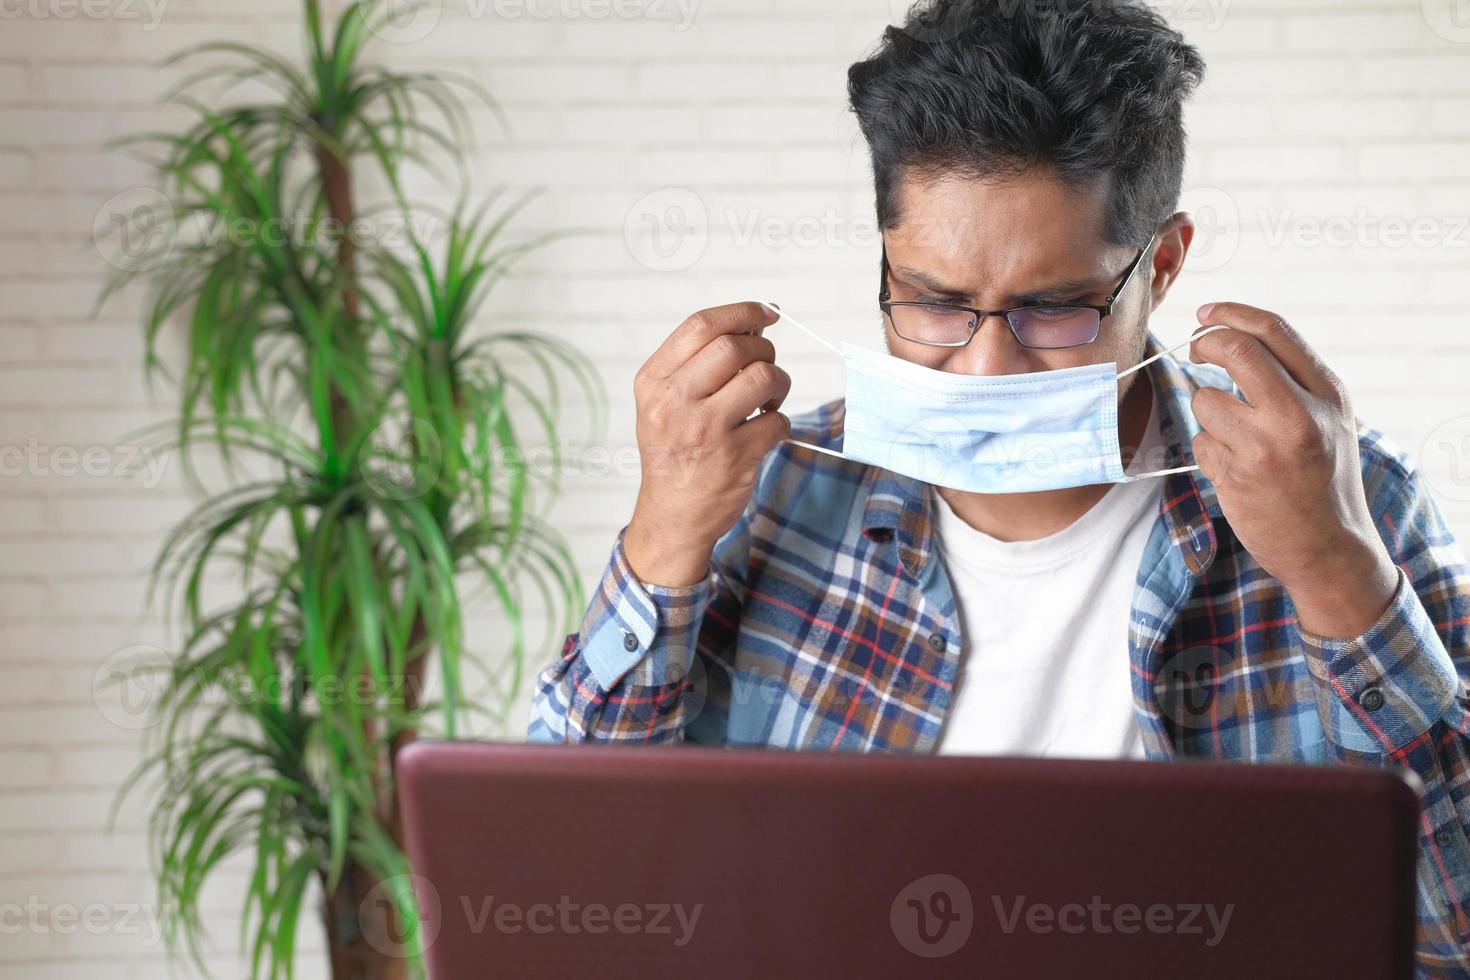 jonge bedrijfspersoon die beschermend masker draagt tijdens het werken op laptop foto